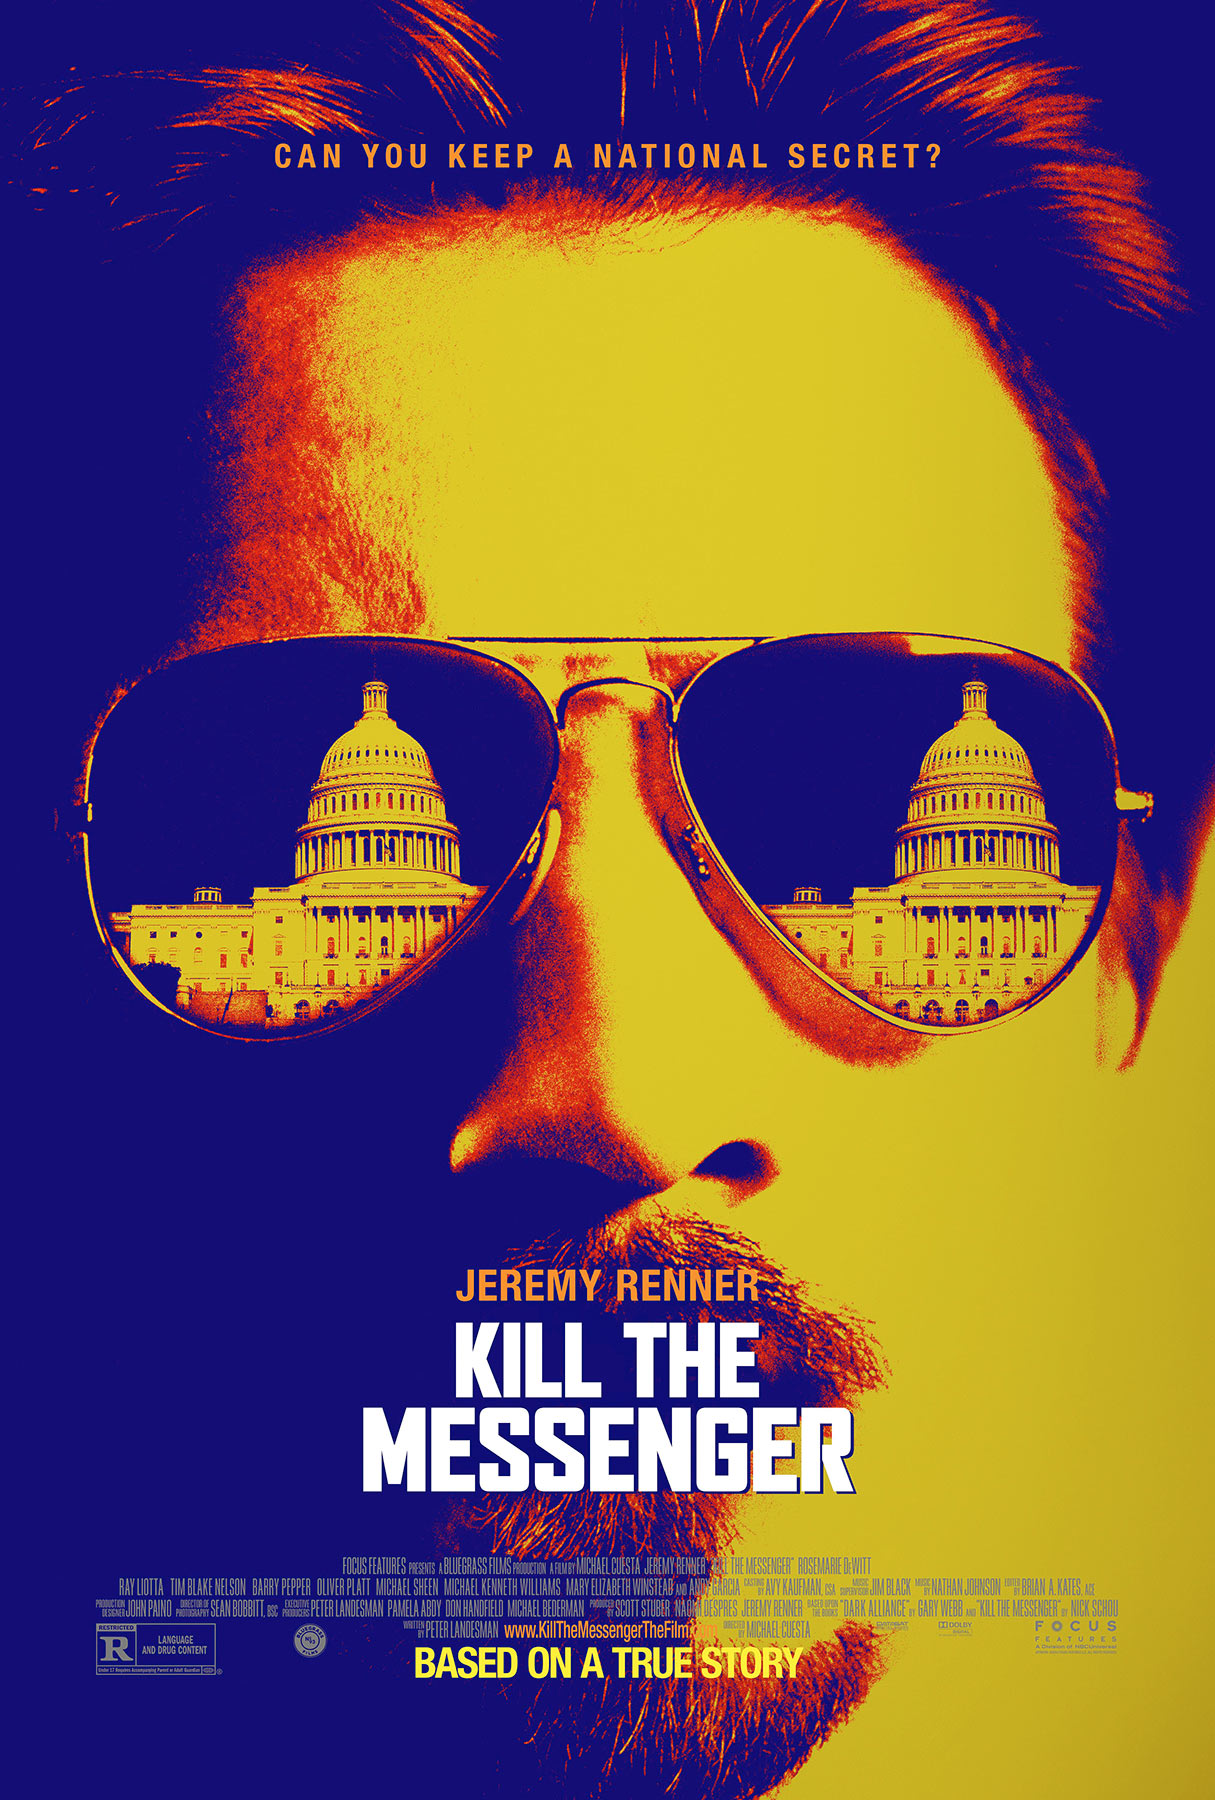 #KillTheMessenger Four new clips released for Jeremy Renner thriller Kill the Messenger